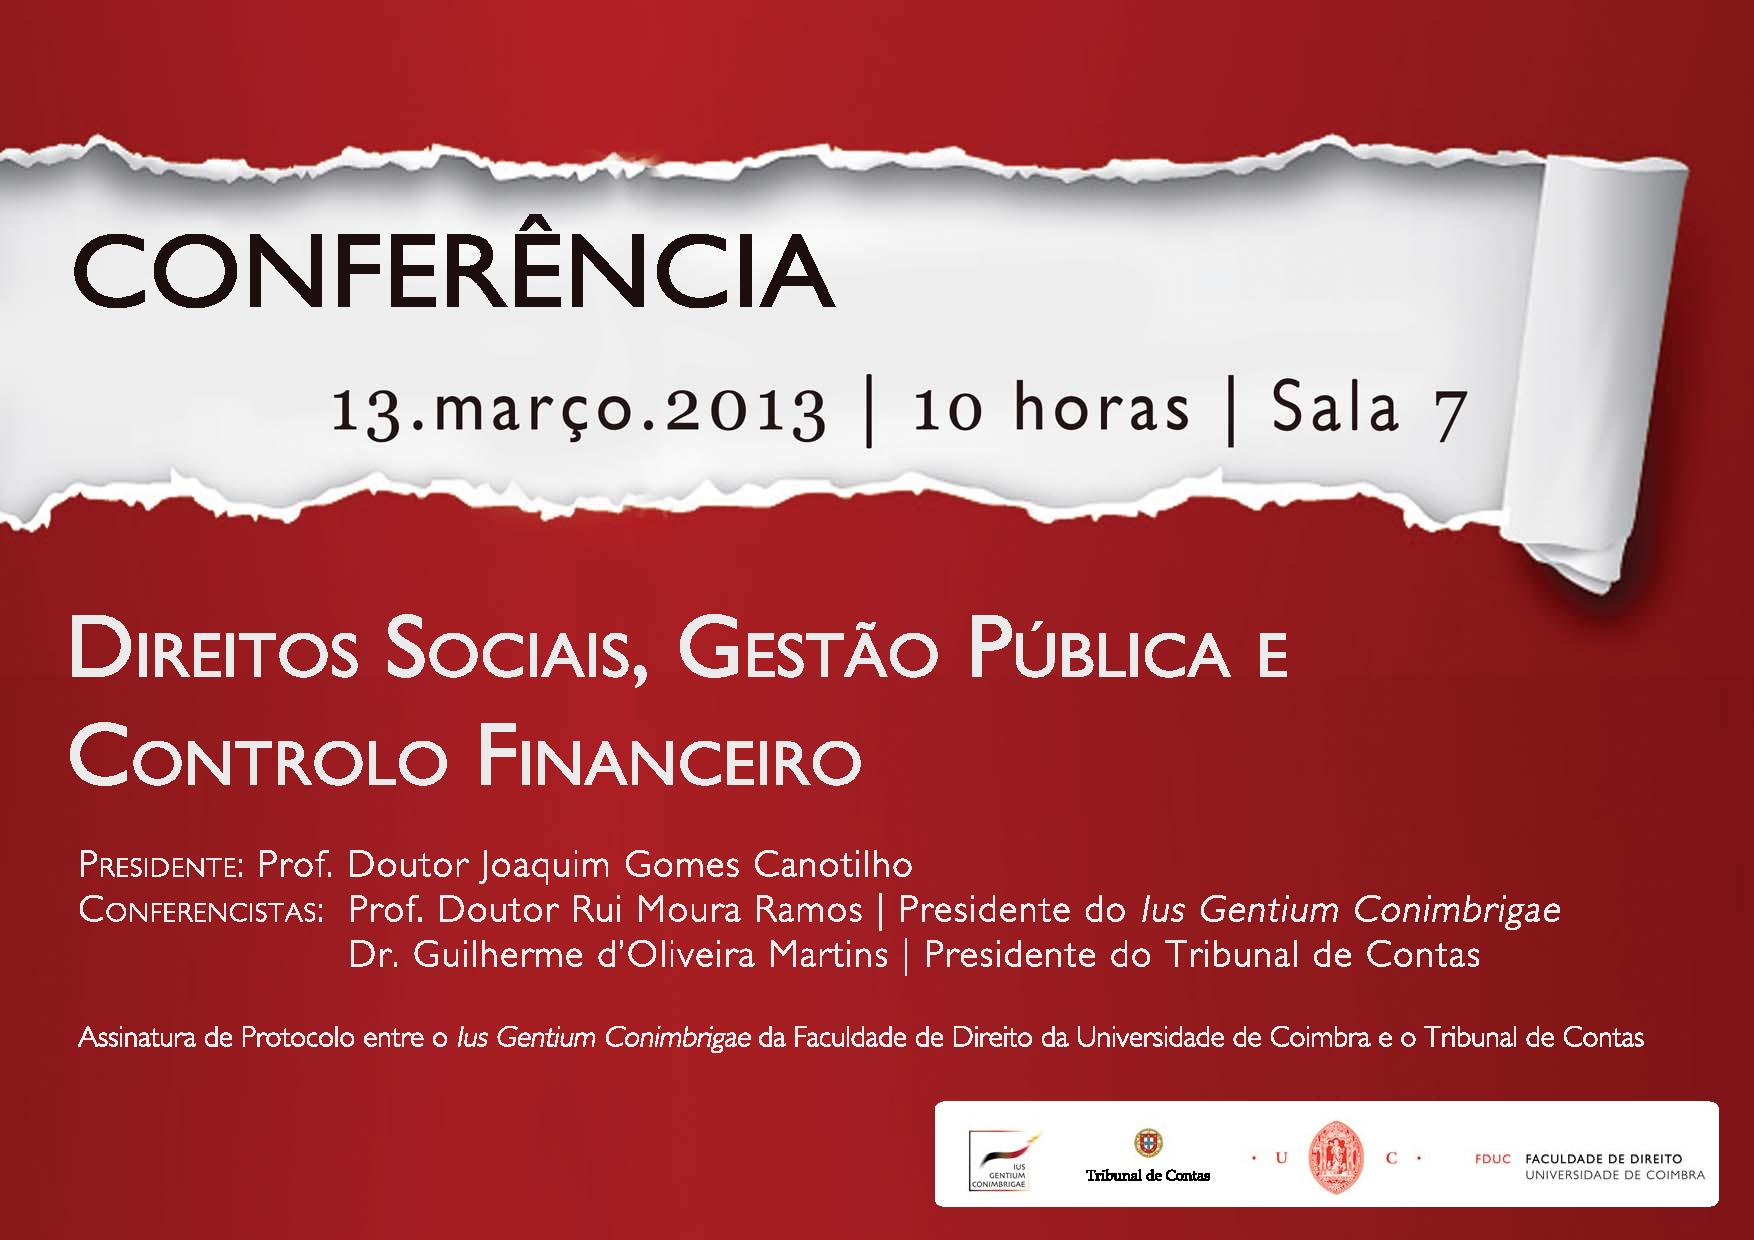 Conferência: Direitos Sociais, Gestão Pública e Controlo Financeiro